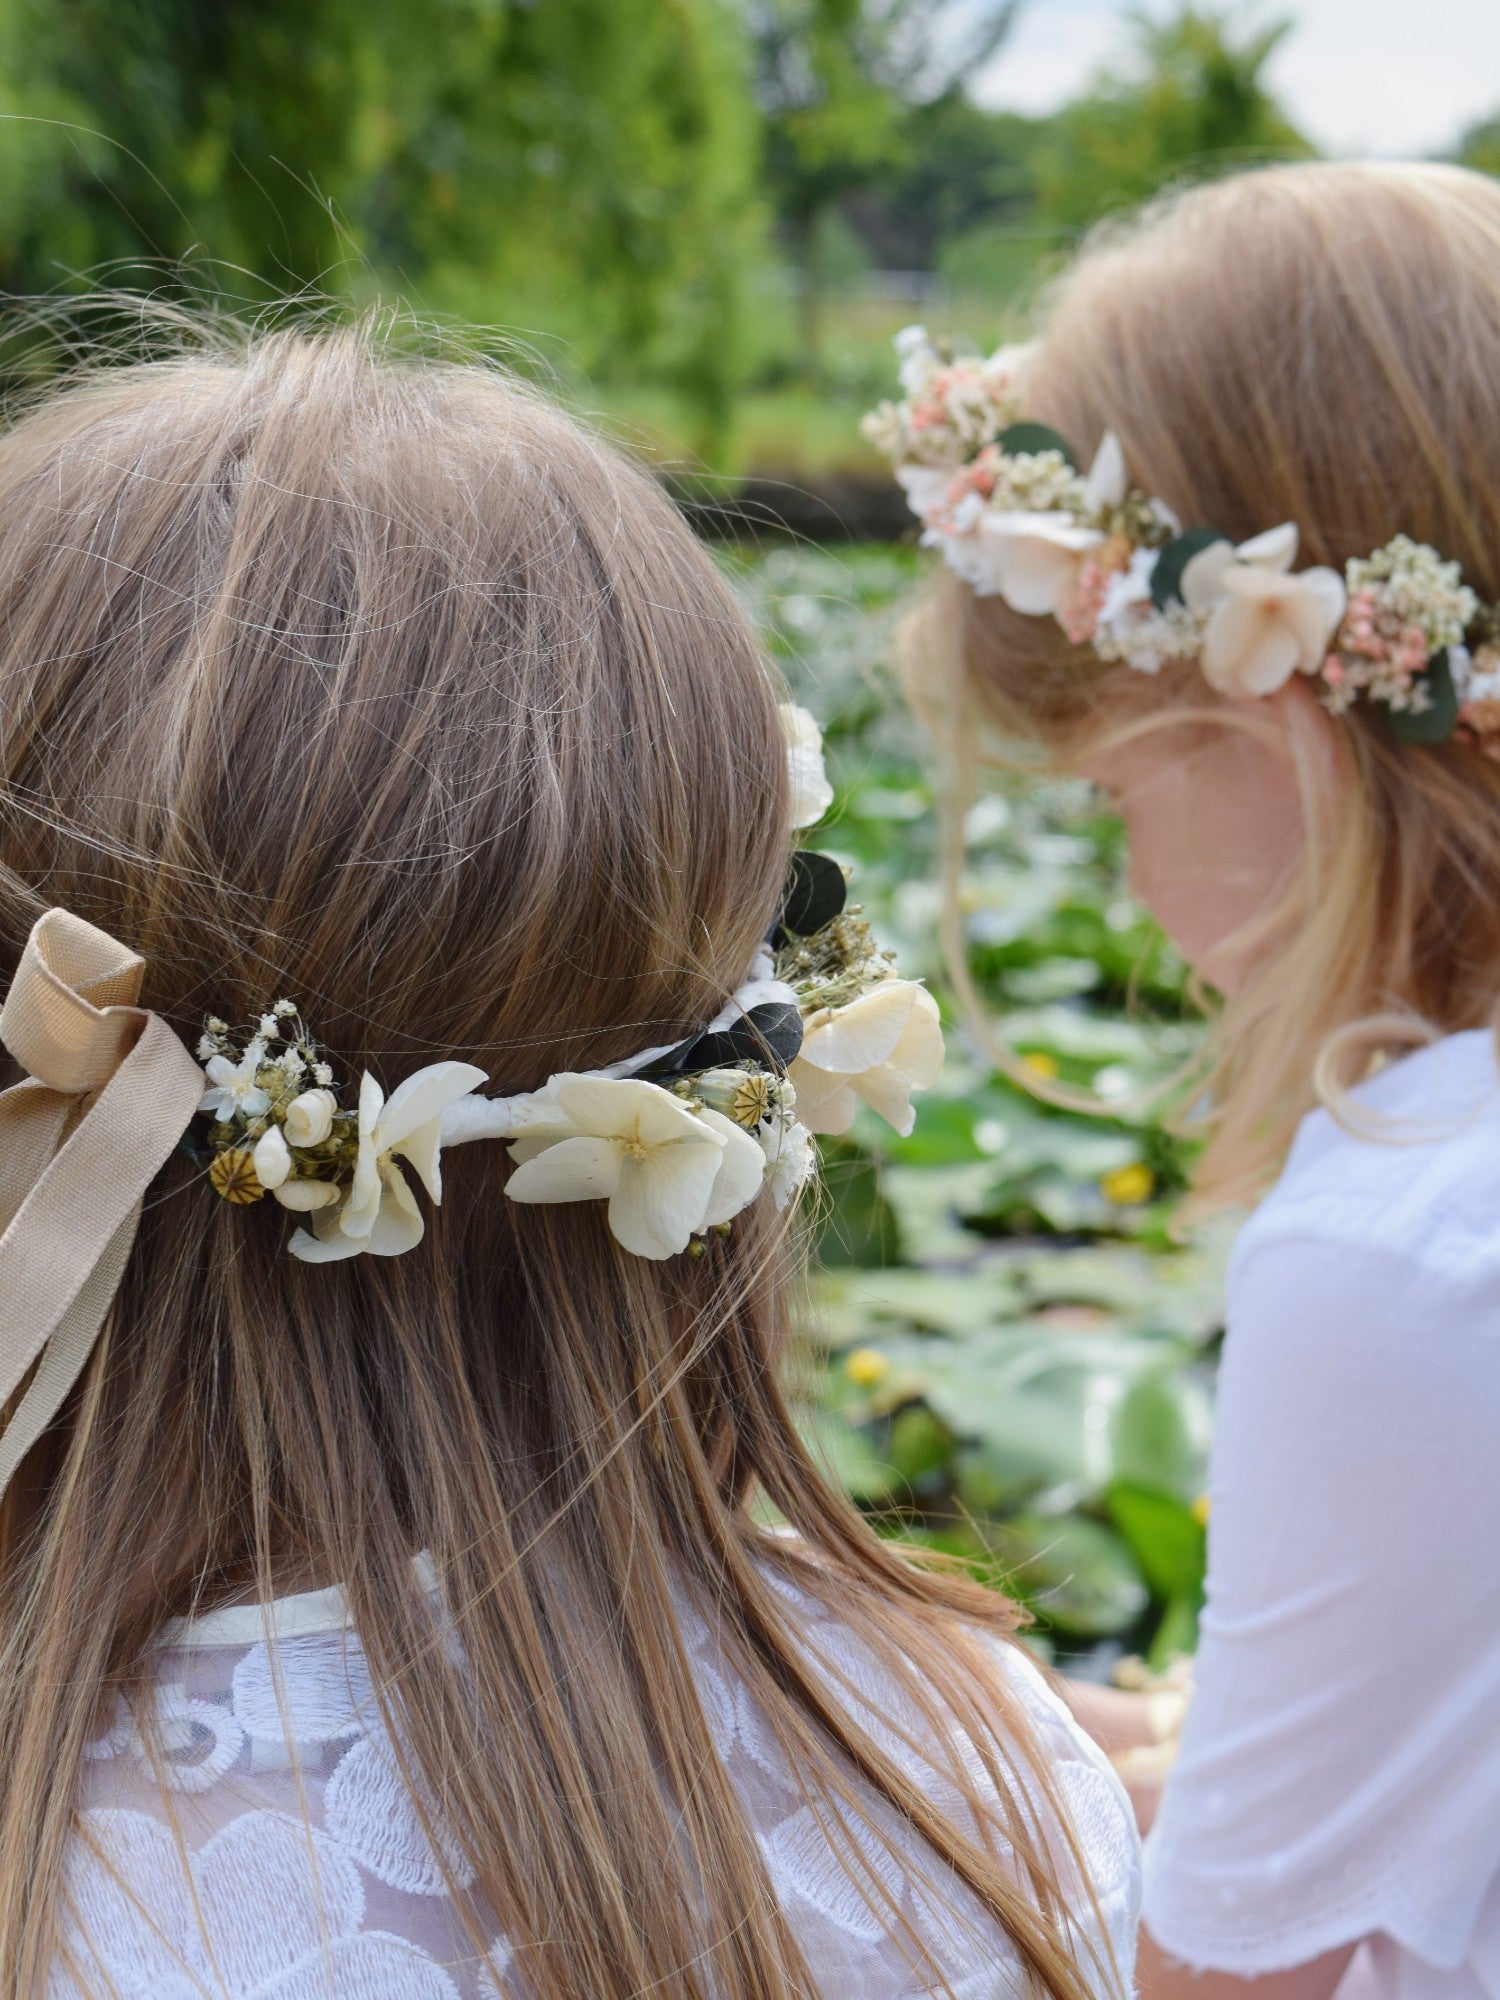 Twee meisjes zitten aan een vijver en dragen een zwierig wit kleedje en een bloemenkrans gemaakt van droogbloemen in zachtroze en witte witten